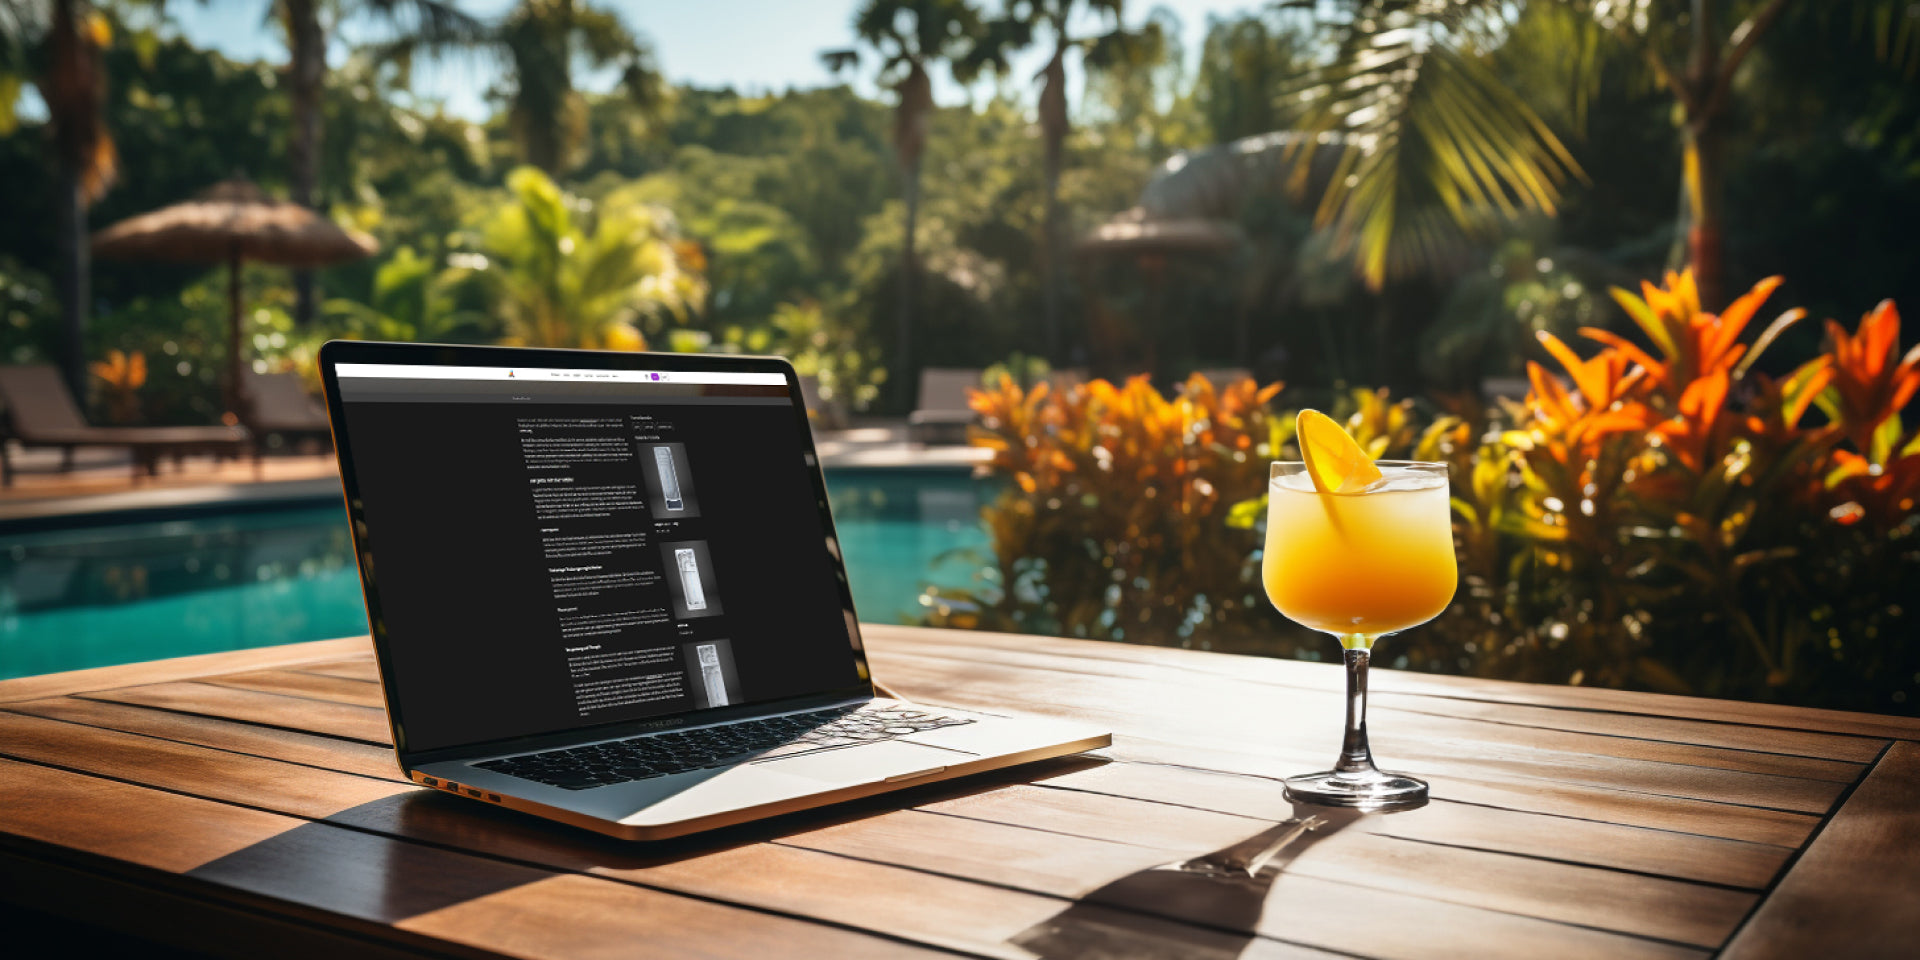 ein exotischer Ort im Freien: ein Tisch mit einem Laptop und einem Glas mit frischem Orangensaft. Im Hintergrund Palmen und ein Swim Spa.